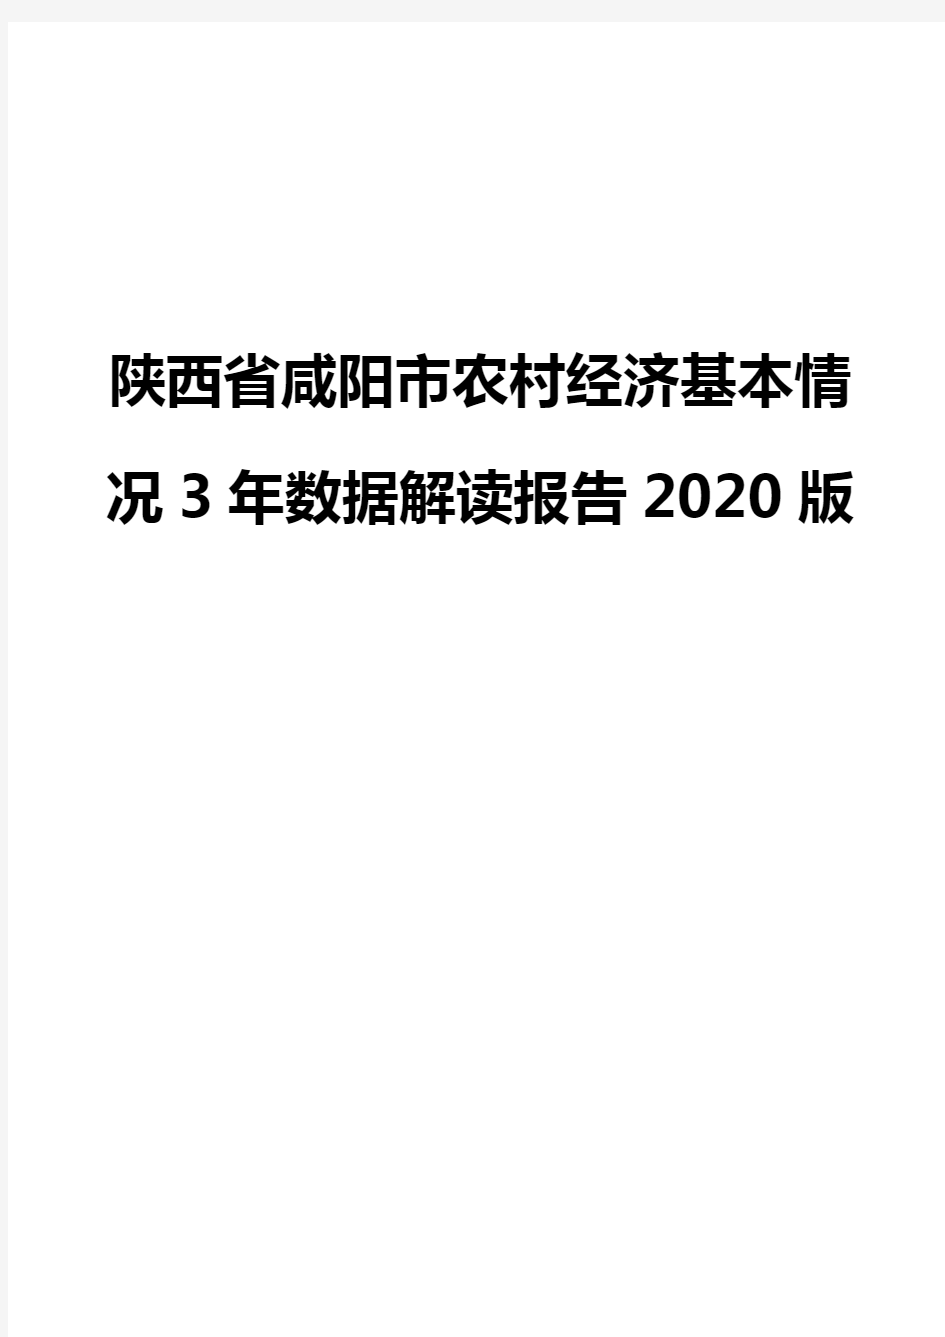 陕西省咸阳市农村经济基本情况3年数据解读报告2020版